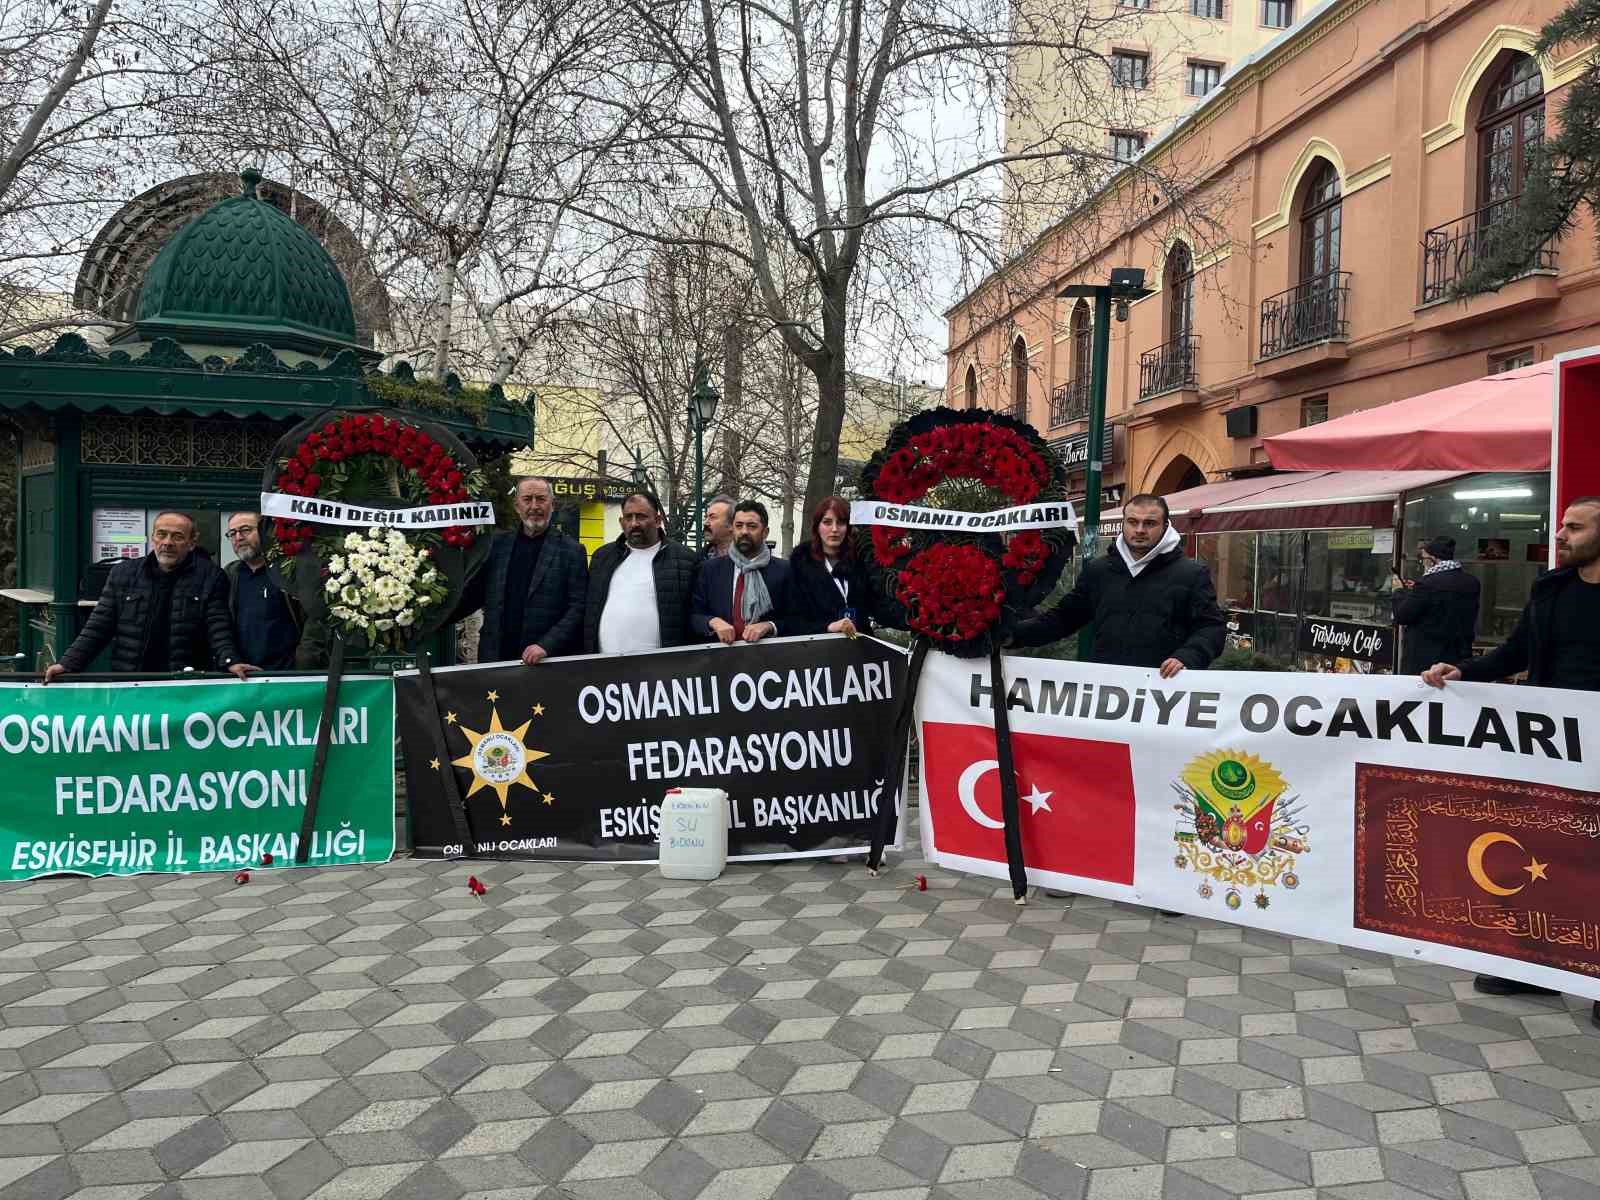 Osmanlı Ocakları Federasyonu‘ndan Büyükerşen’e tepki